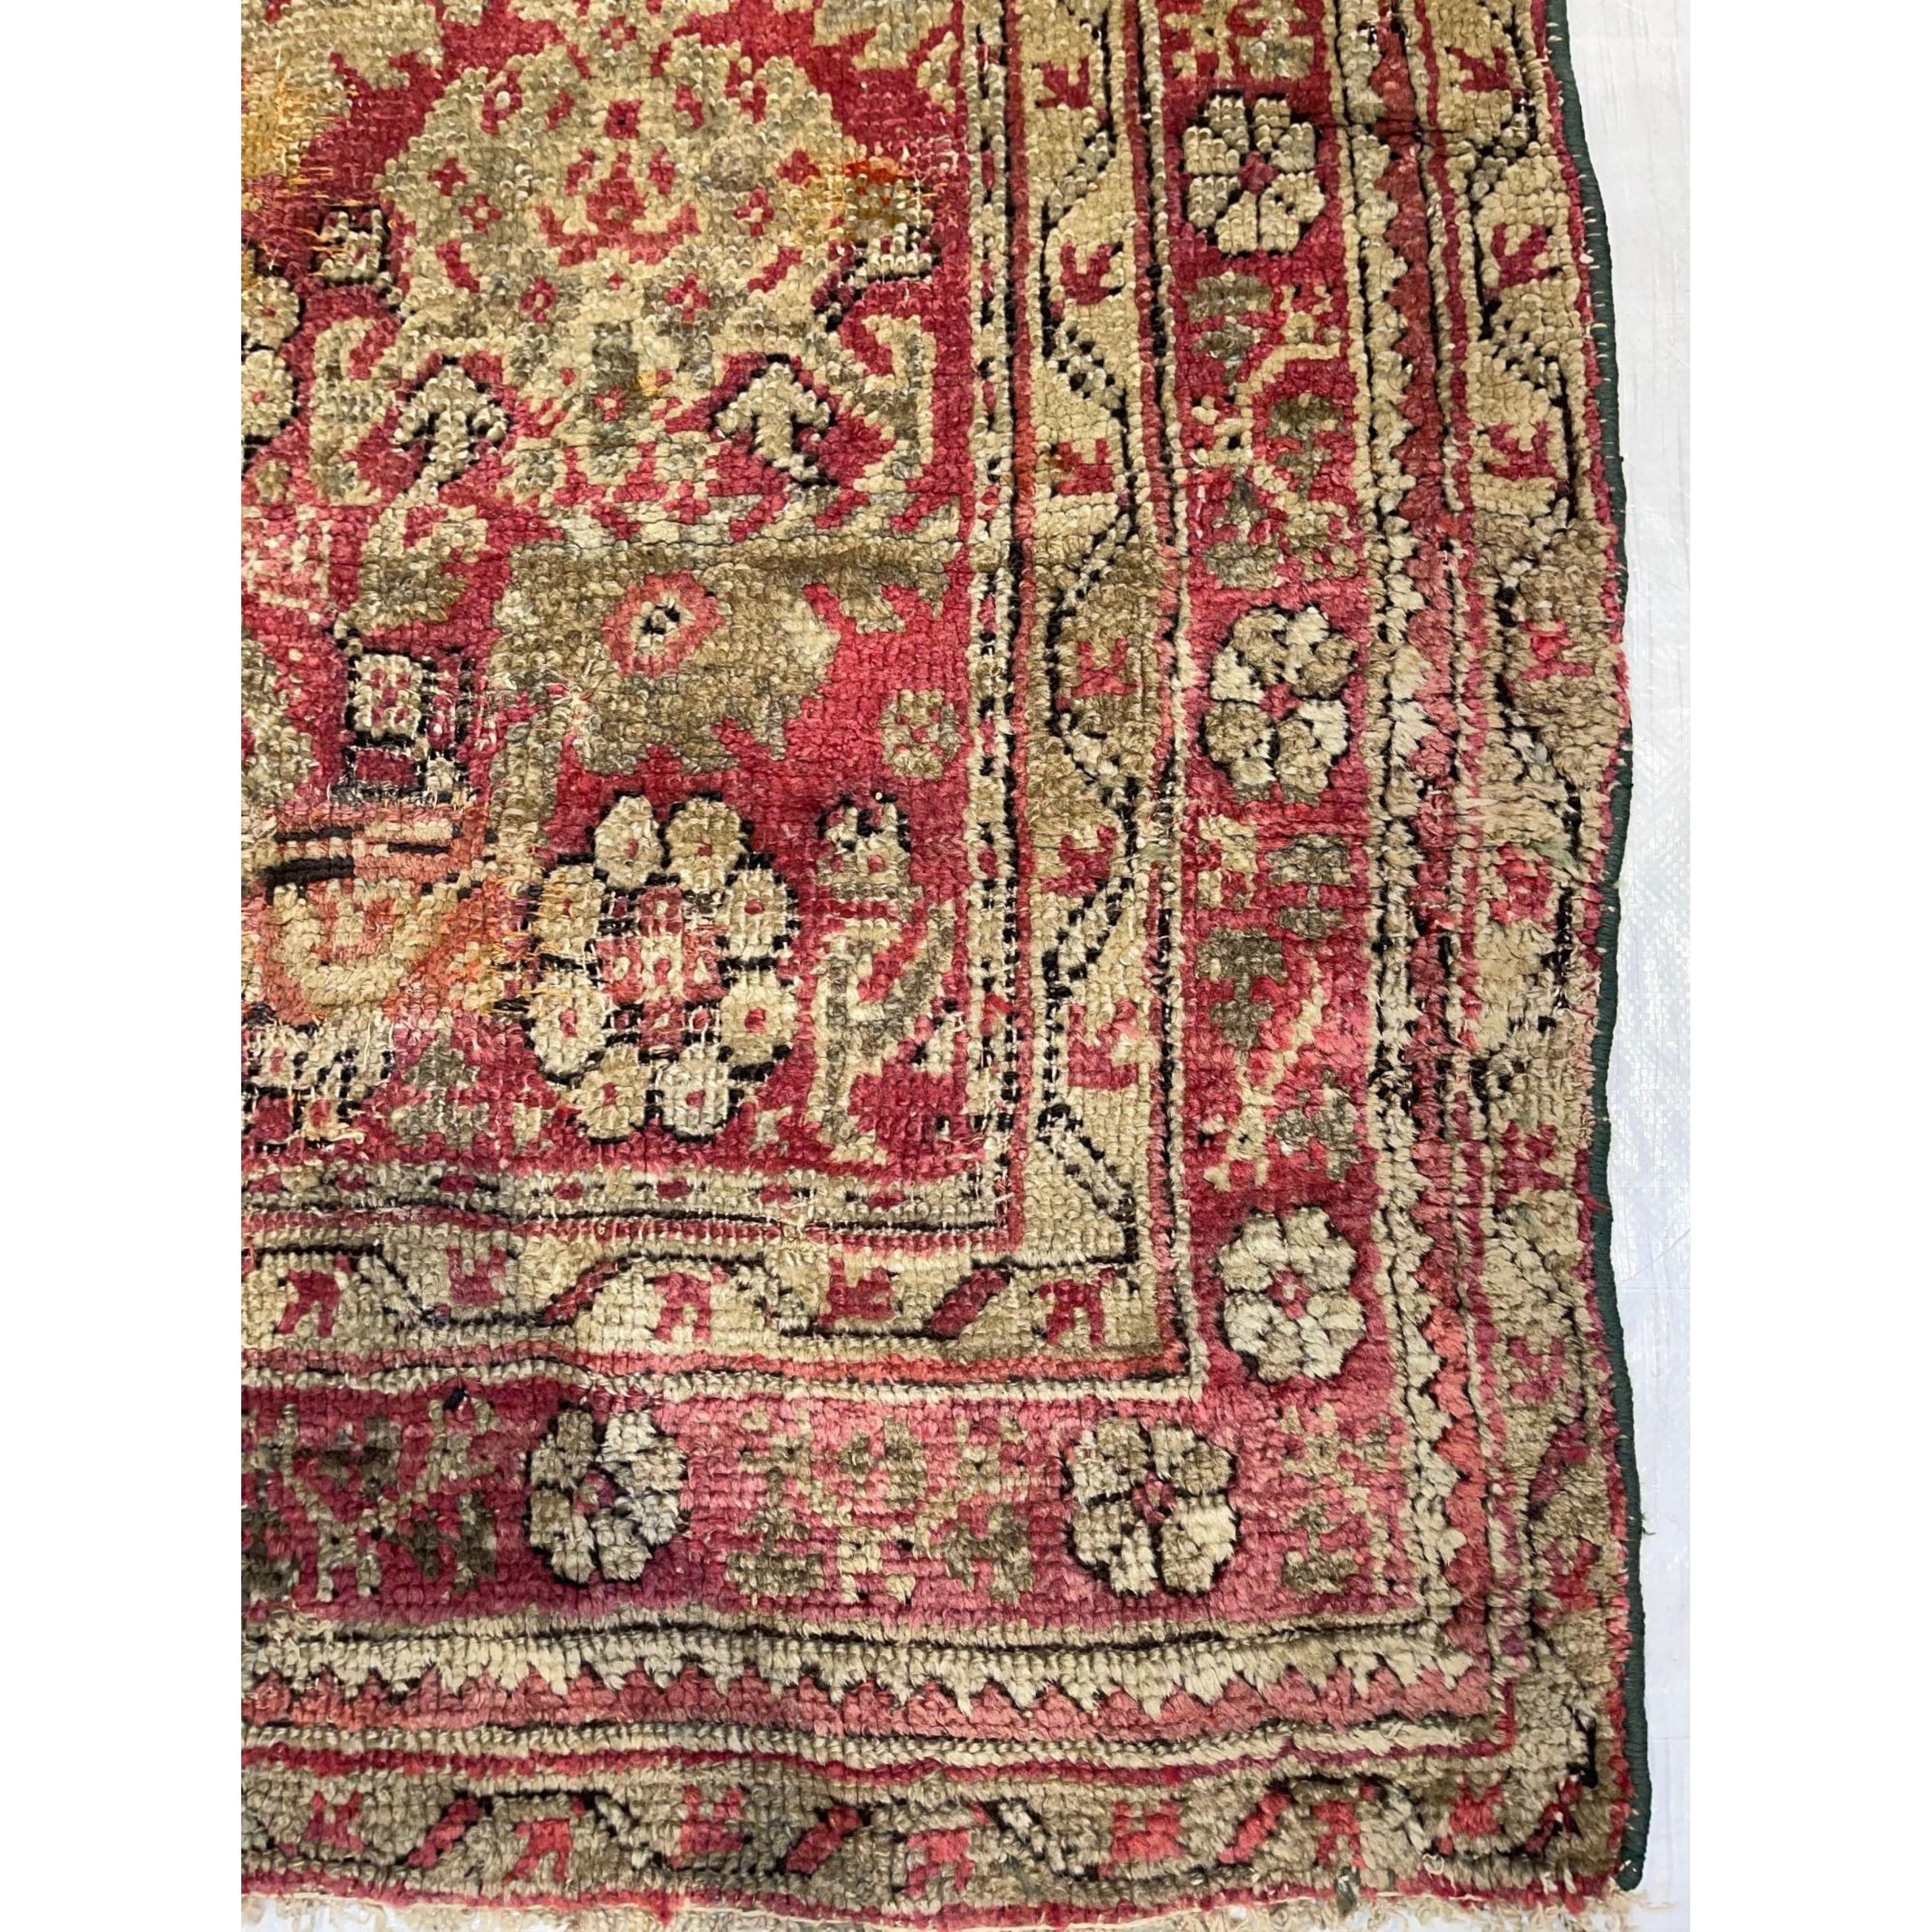 Tribal 1850s Antique Floral Turkish Oushak Rug For Sale